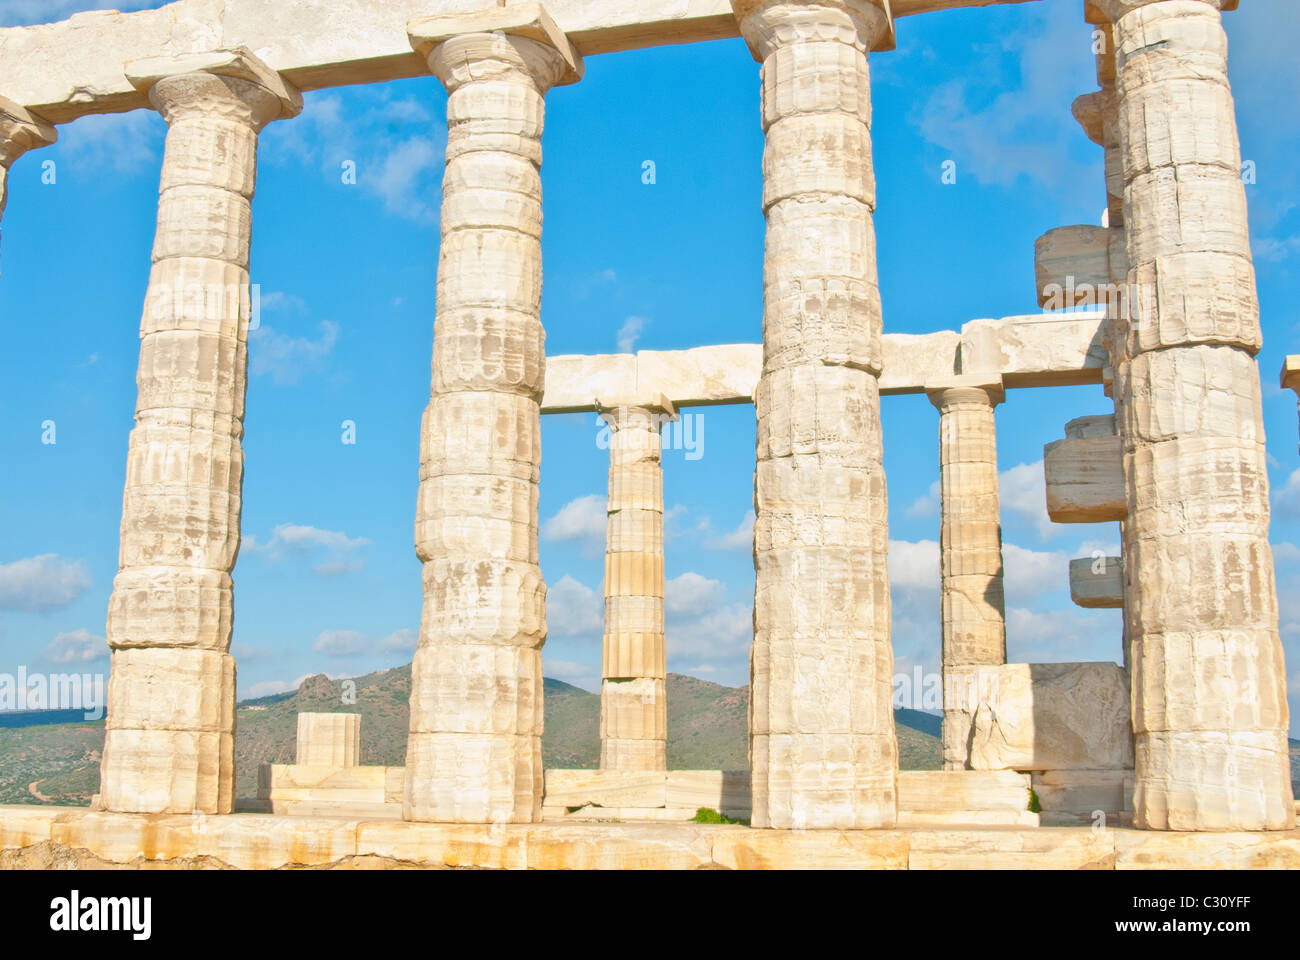 Kap Sounion ist als Standort der Ruinen einer alten griechischen Tempel des Poseidon, der Gott des Meeres in der klassischen Mythologie bekannt. Stockfoto